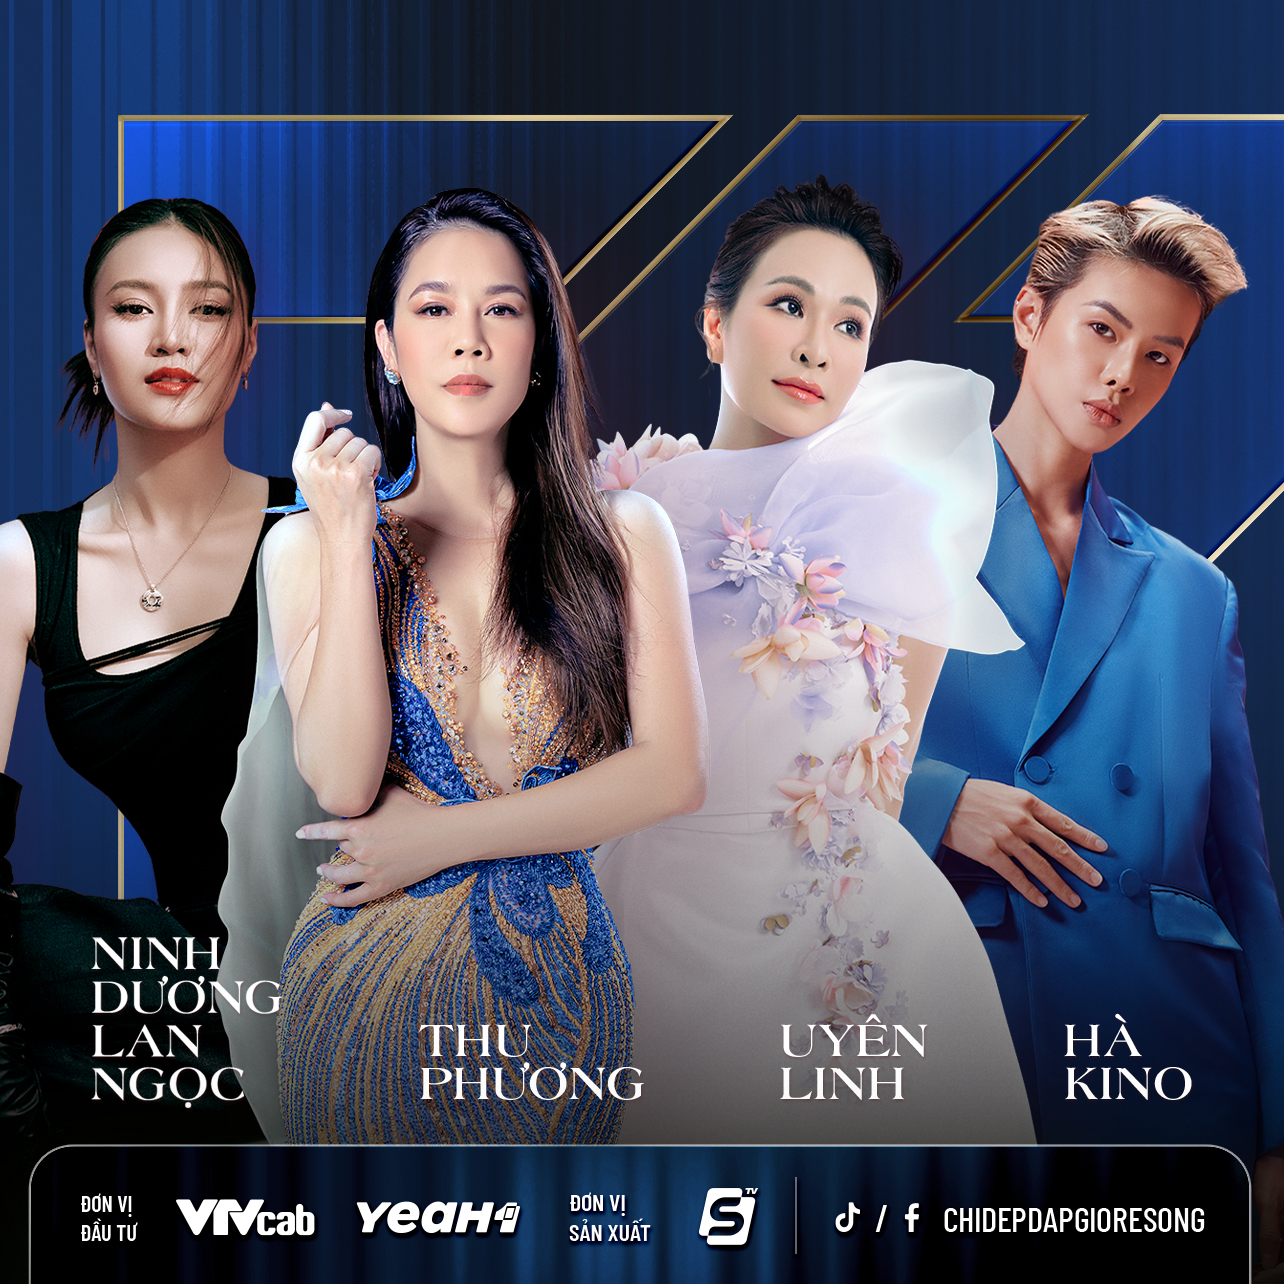 HOT: Thu Phương, Ninh Dương Lan Ngọc, Uyên Linh, Hà Kino là 4 sao nữ đầu tiên tham gia 'Chị Đẹp Đạp Gió Rẽ Sóng' - ảnh 1